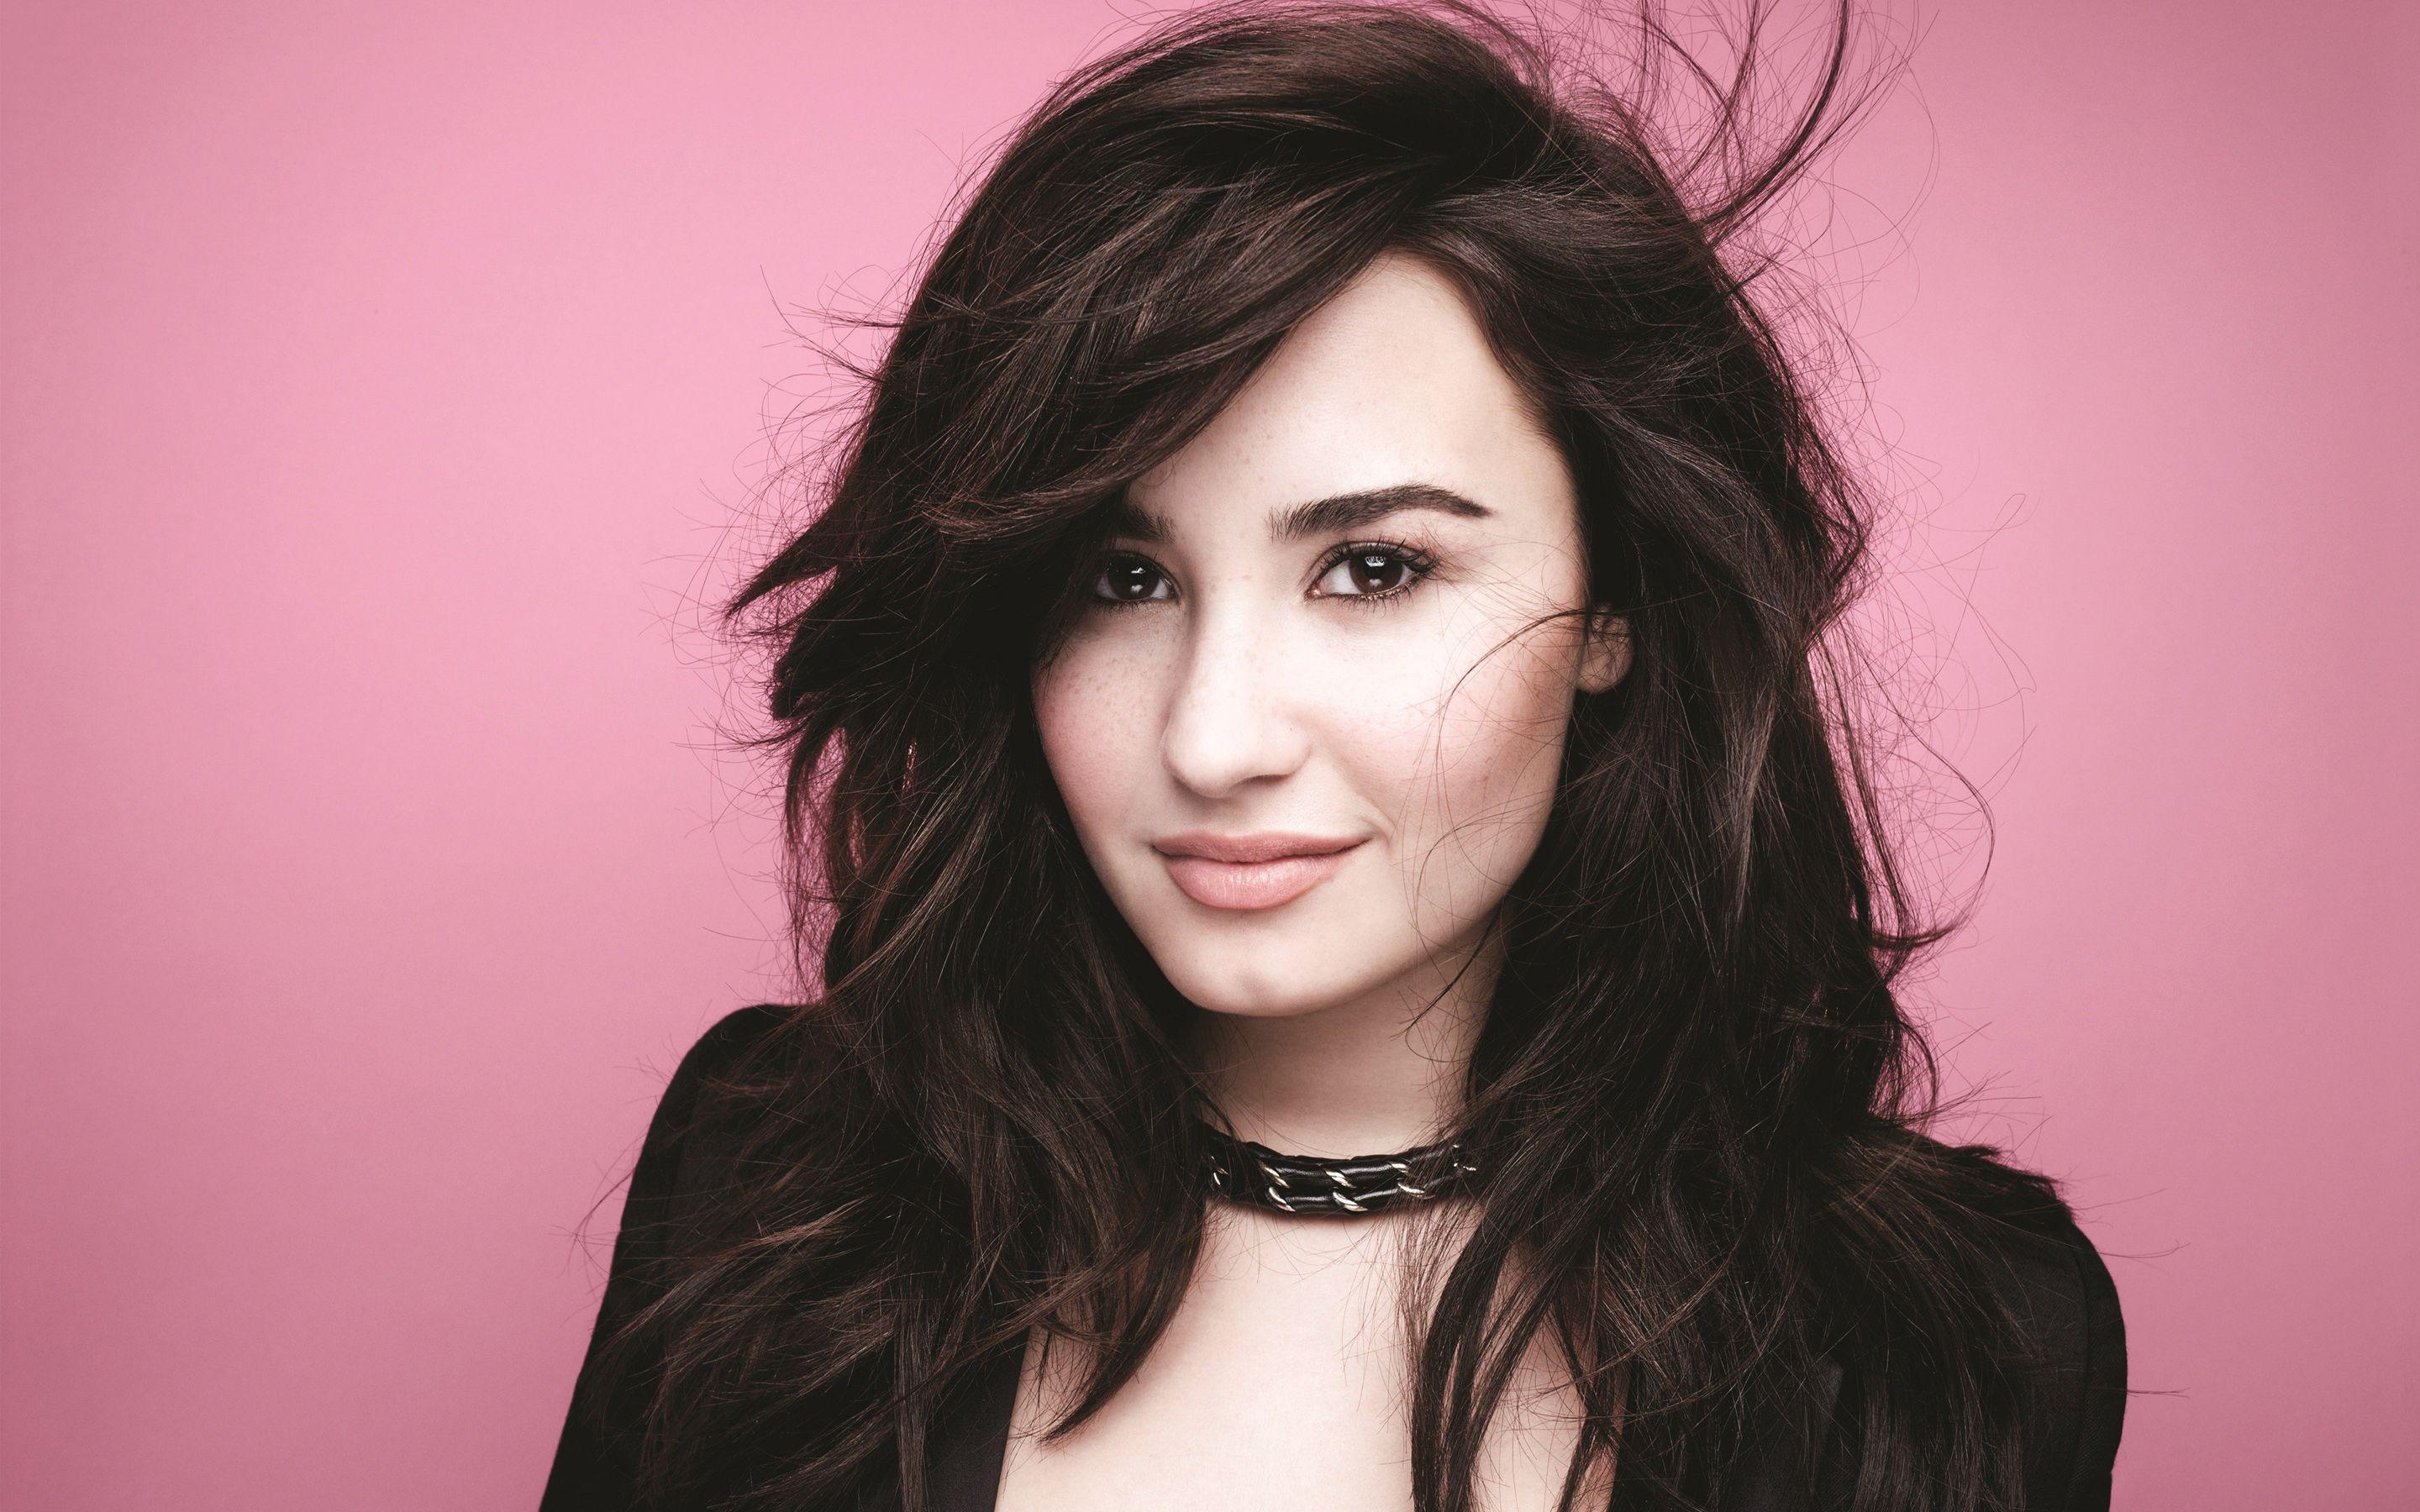 Demi Lovato Hd Wallpaper 4. Demi Lovato HD Wallpaper